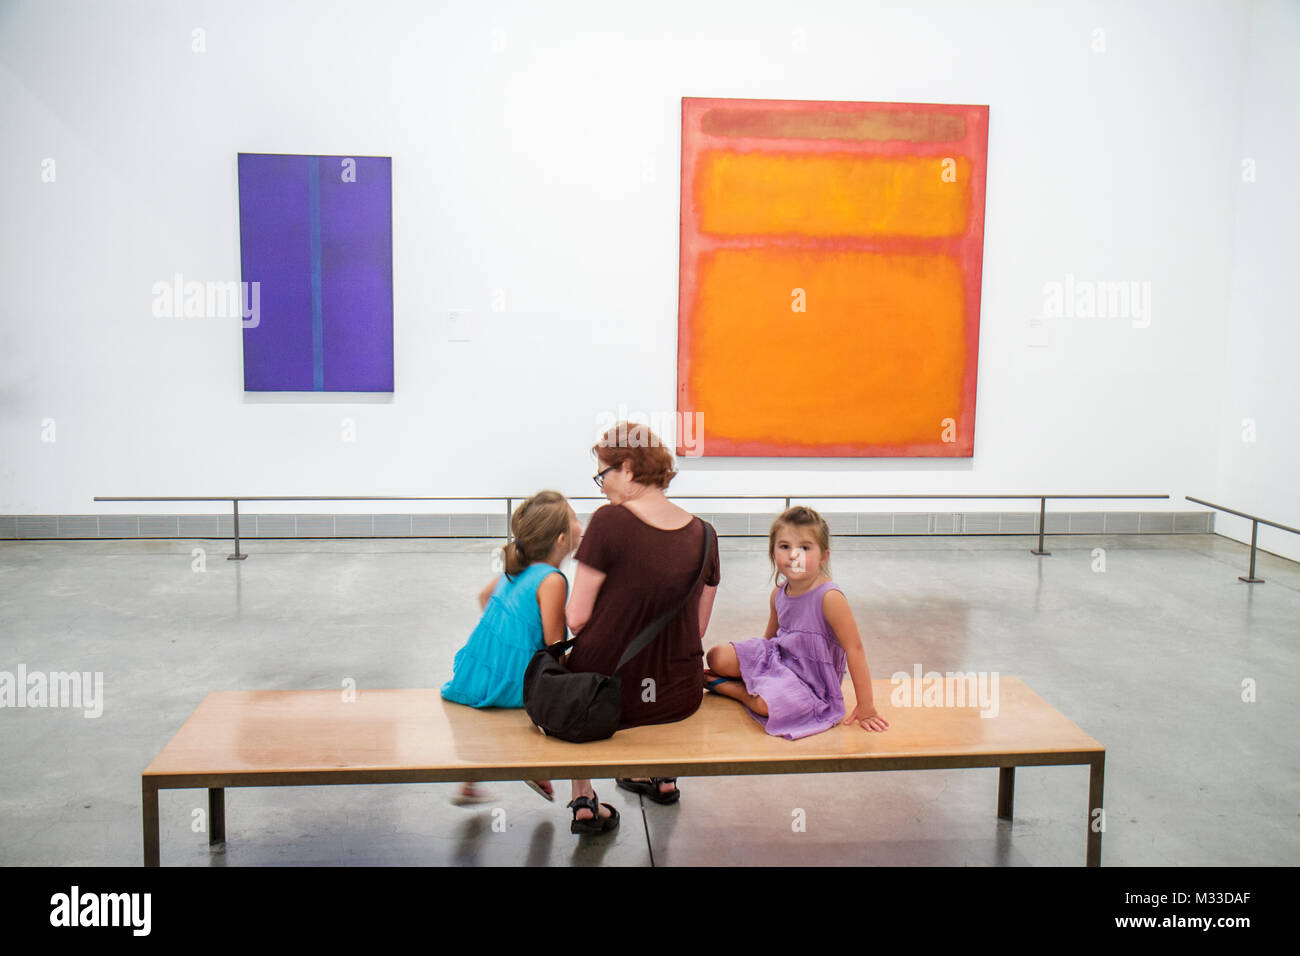 Philadelphia Pennsylvania,Philadelphia Museum of Art,istituzione,mostra collezione collezione moderna,pittura,arte,Mark Rothko,arancio,p Foto Stock